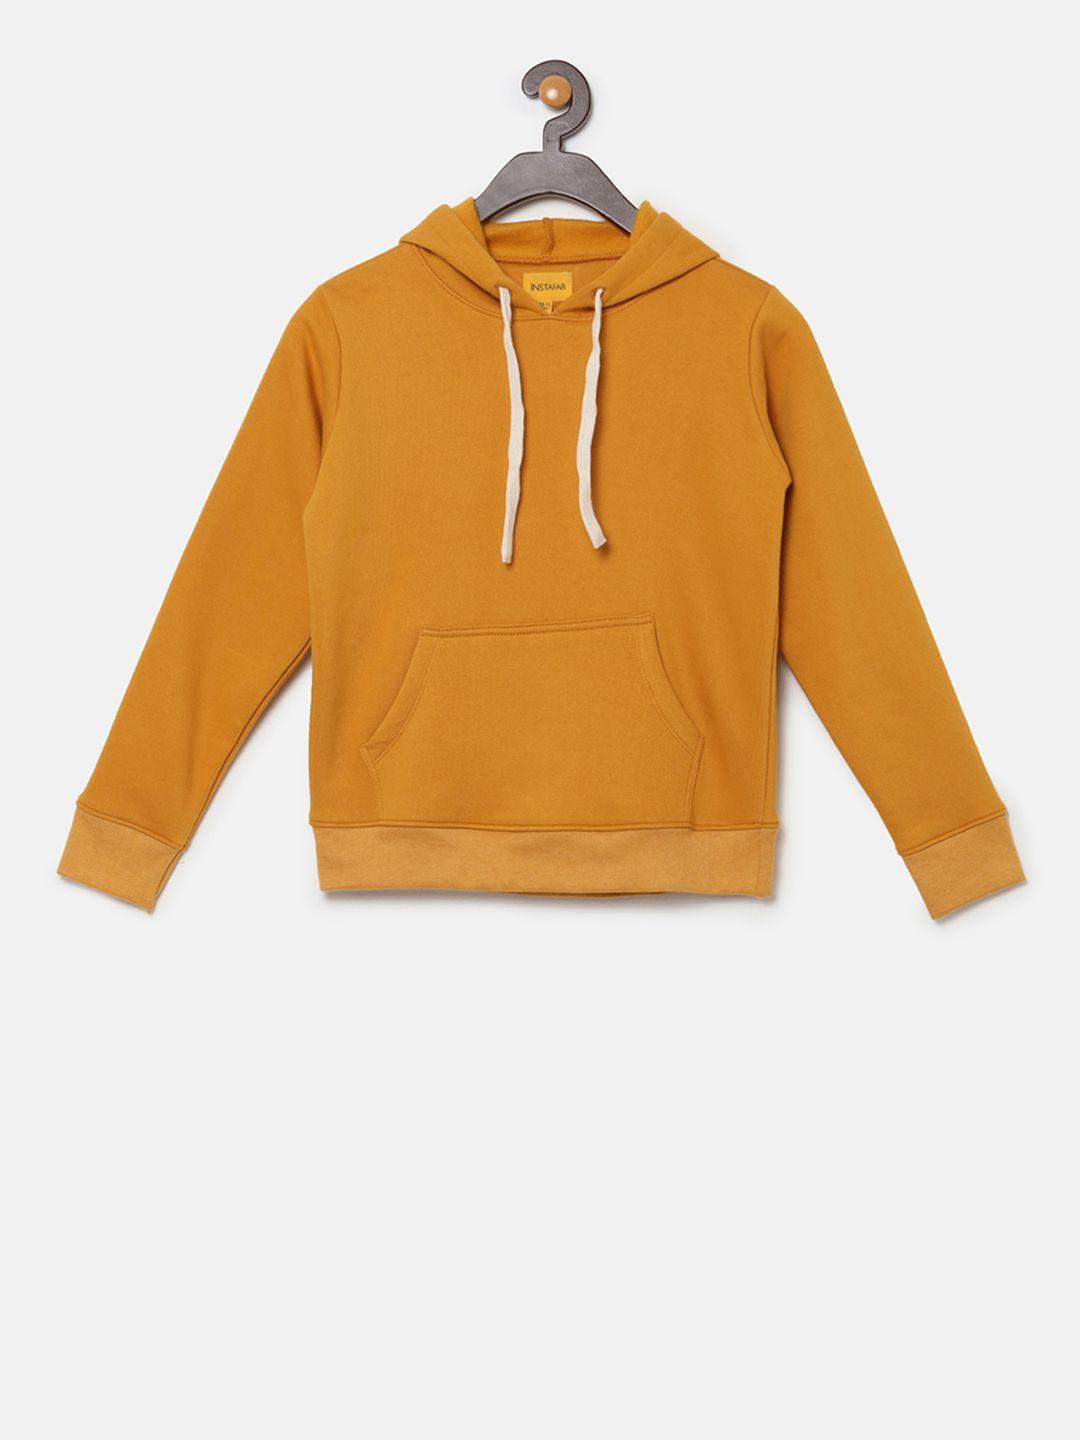 instafab boys mustard yellow  solid hooded sweatshirt